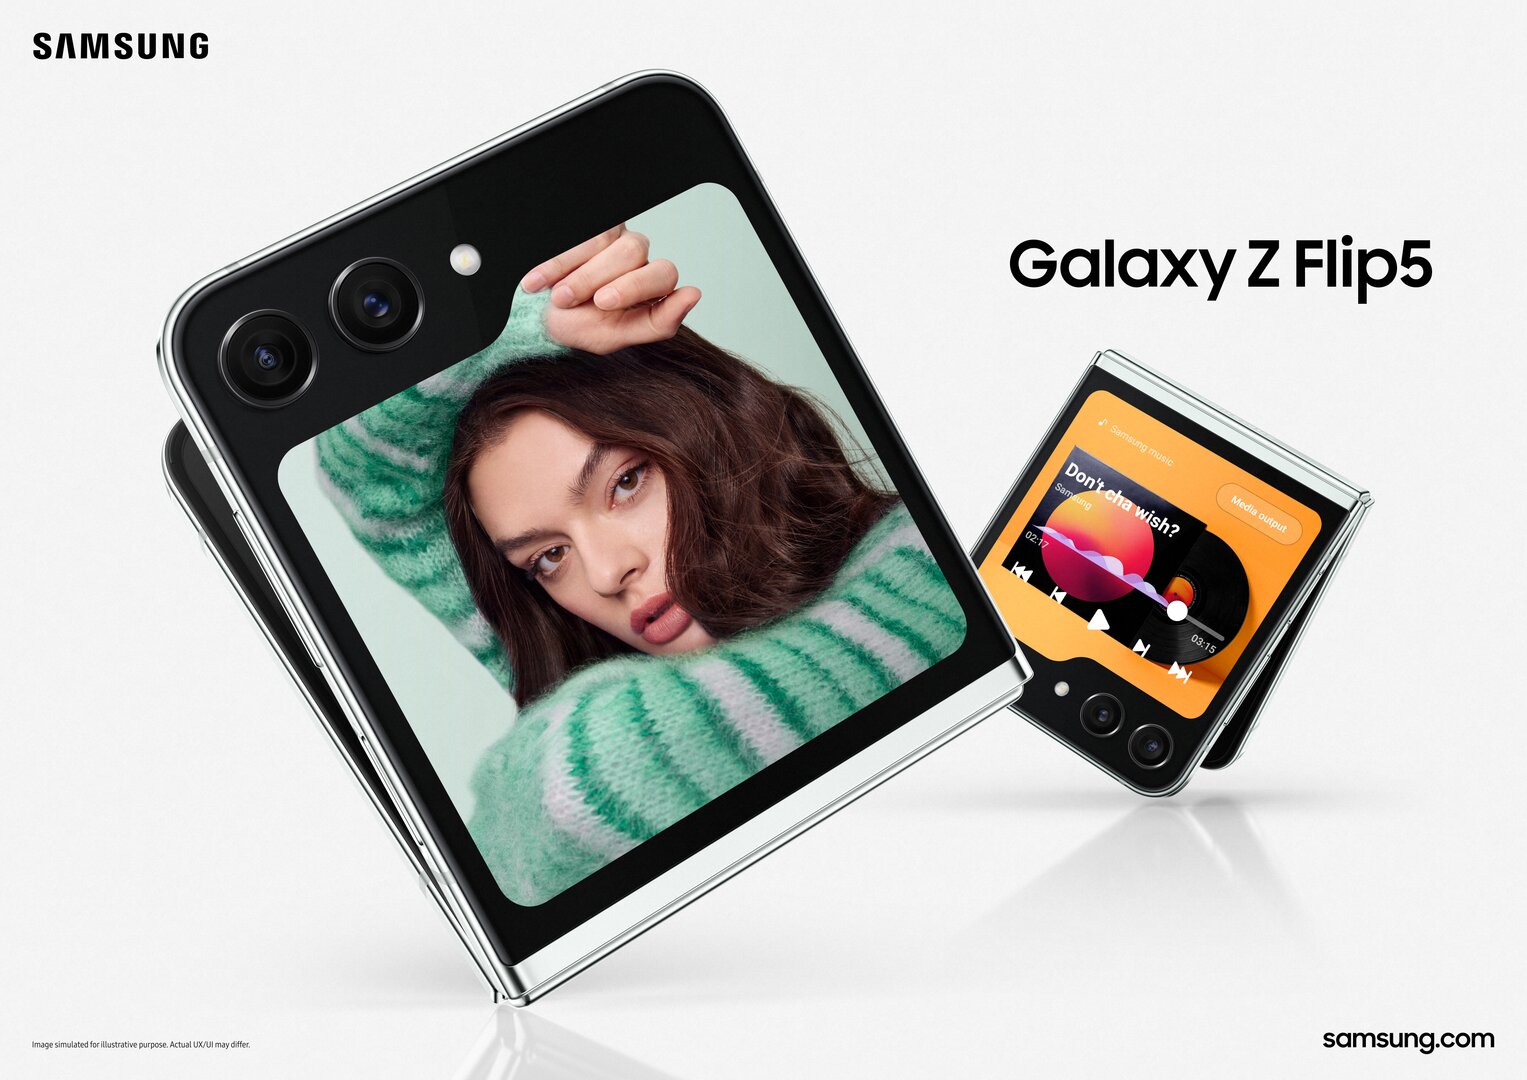 Preis des Samsung Galaxy Z Flip 5: Hier erfahren Sie genau, wie viel es kostet